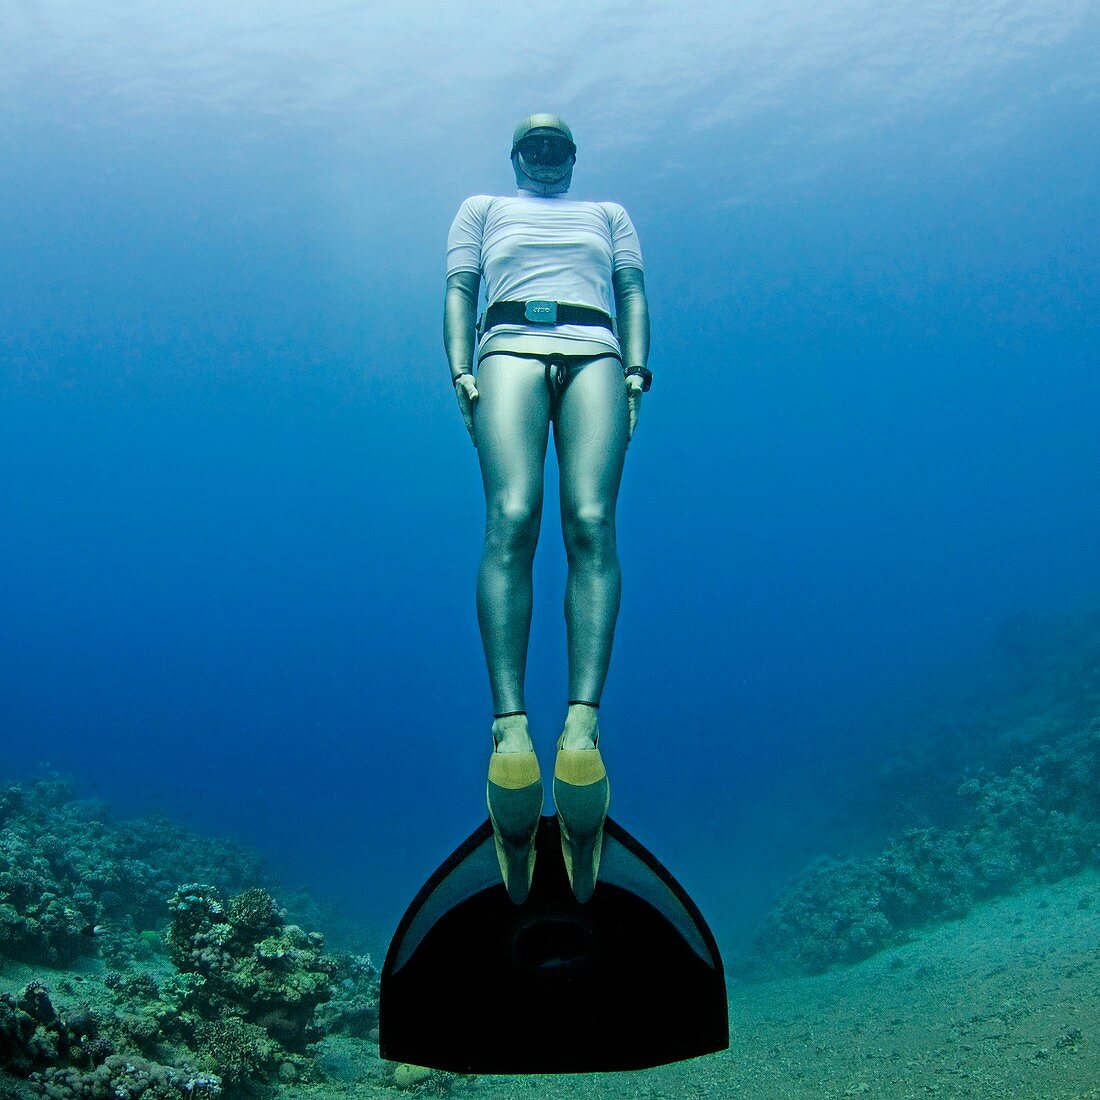 Freediver underwater